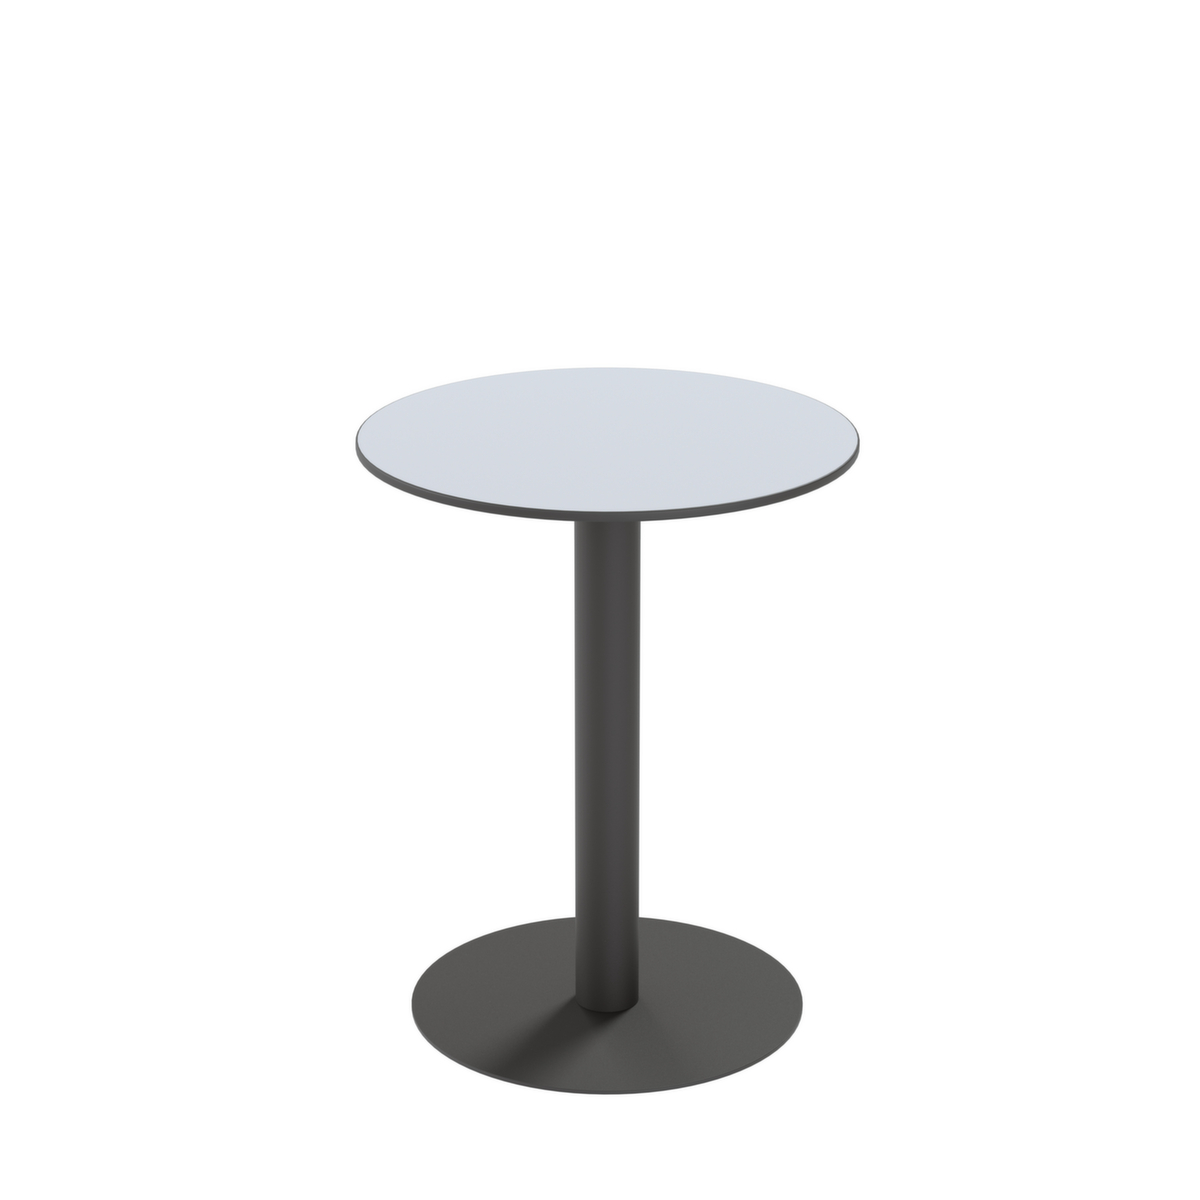 Paperflow Waterbestendige outdoor-tafel Cross, Ø 600 mm, plaat grijs  ZOOM